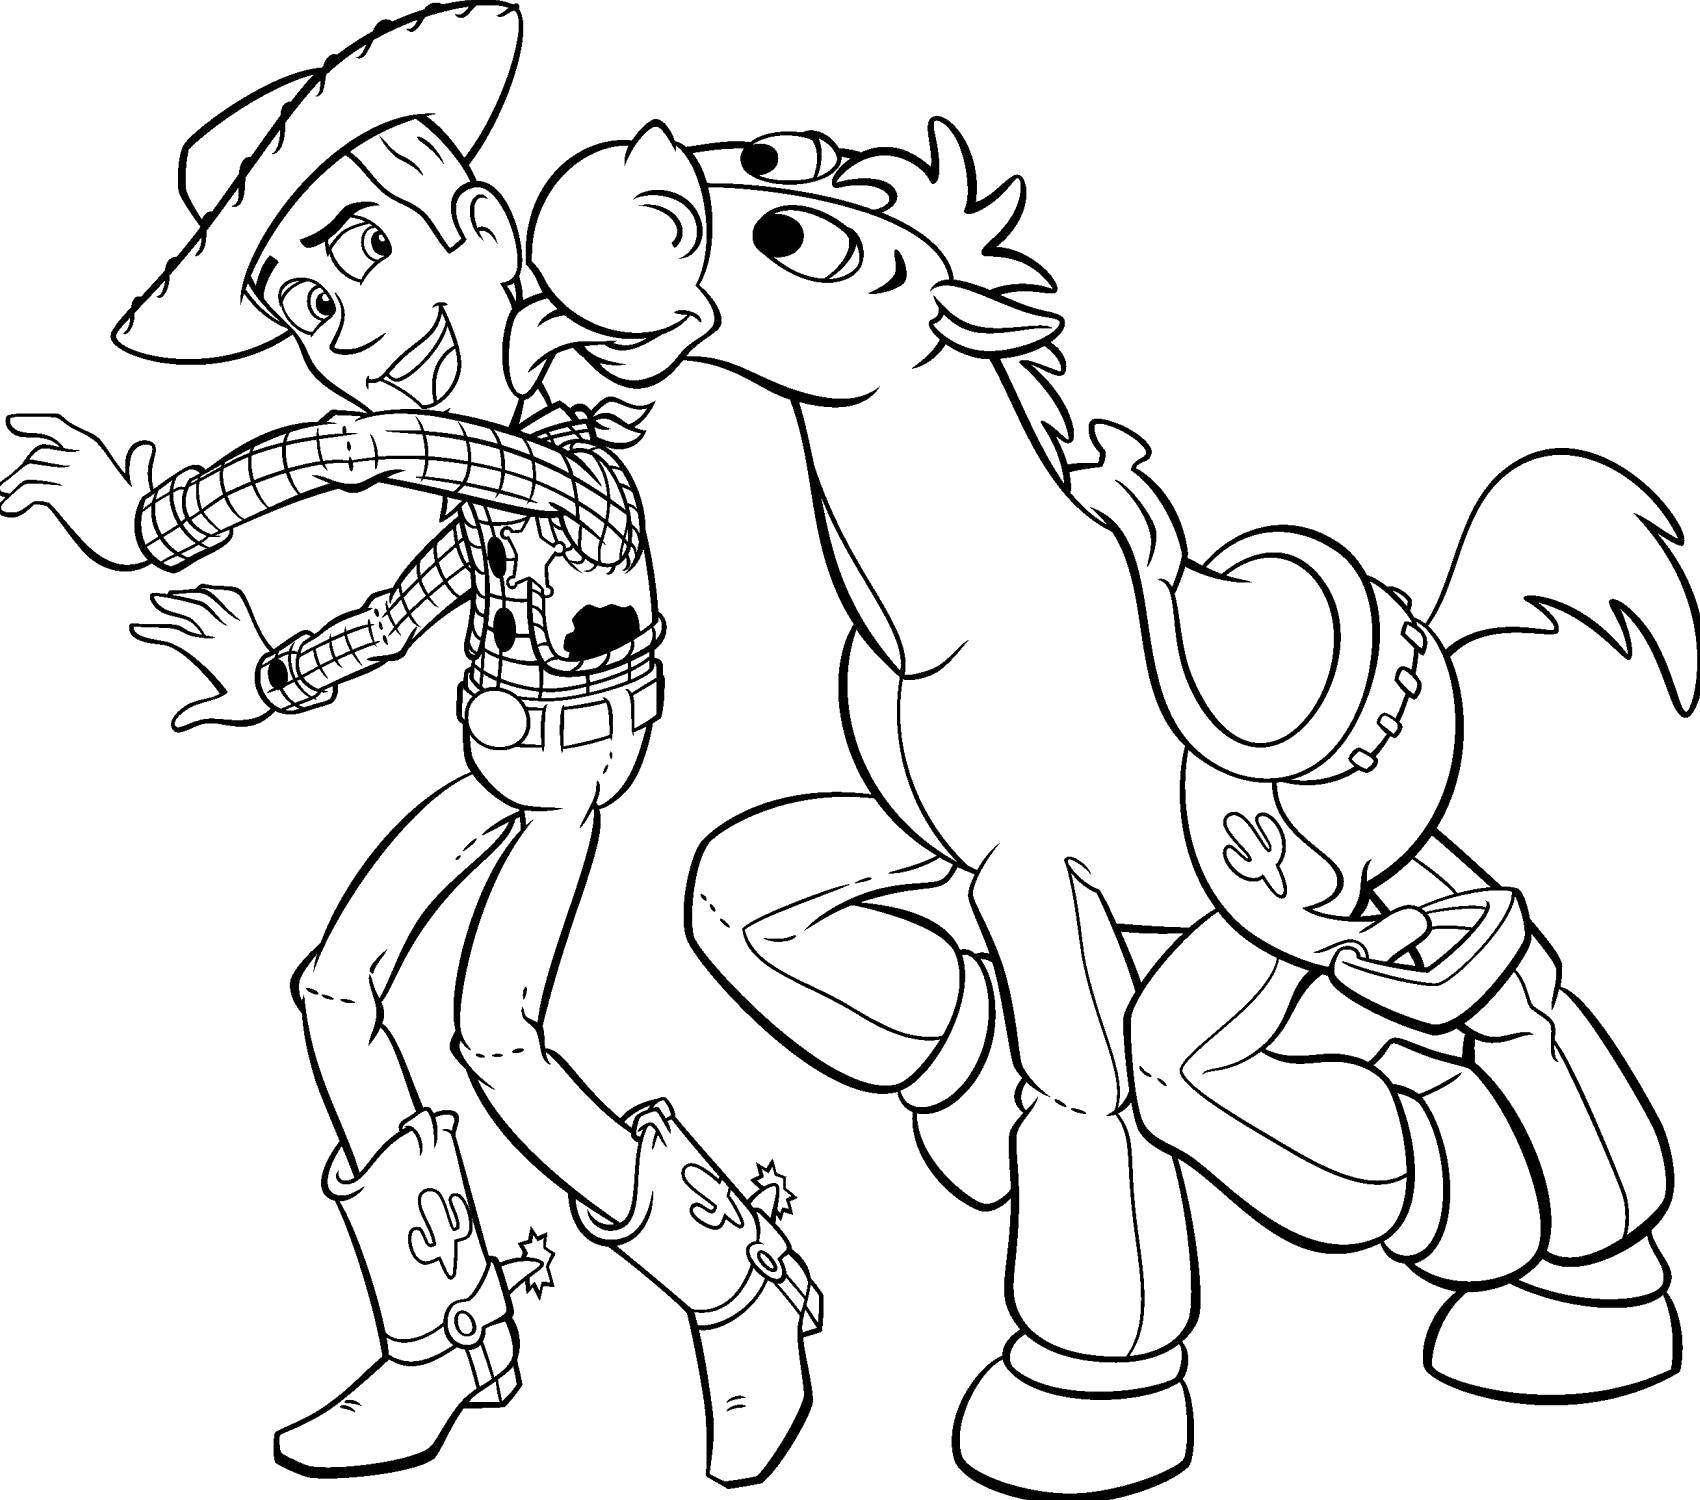 Опис: розмальовки  Шериф вуді з конем. Категорія: Діснеївські розмальовки. Теги:  Персонаж з мультфільму, Історія іграшок .